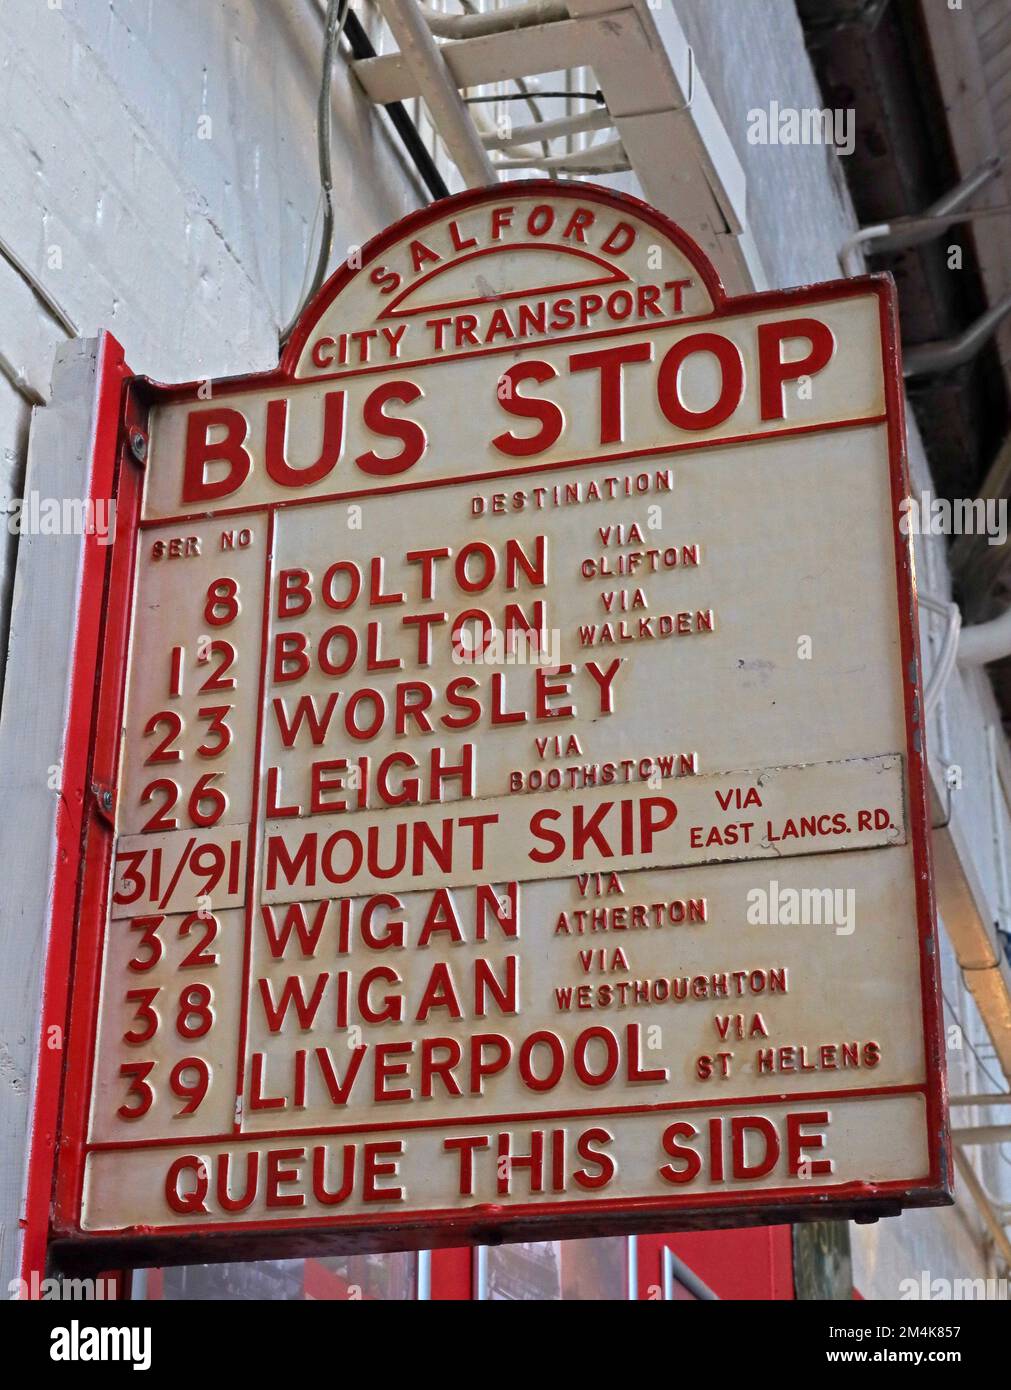 Salford City Transport, Bushaltestelle, Ziele, Warteschlange auf dieser Seite, Bolton, Worsley, Leigh, Mount Skip, Wigan, Liverpool Stockfoto